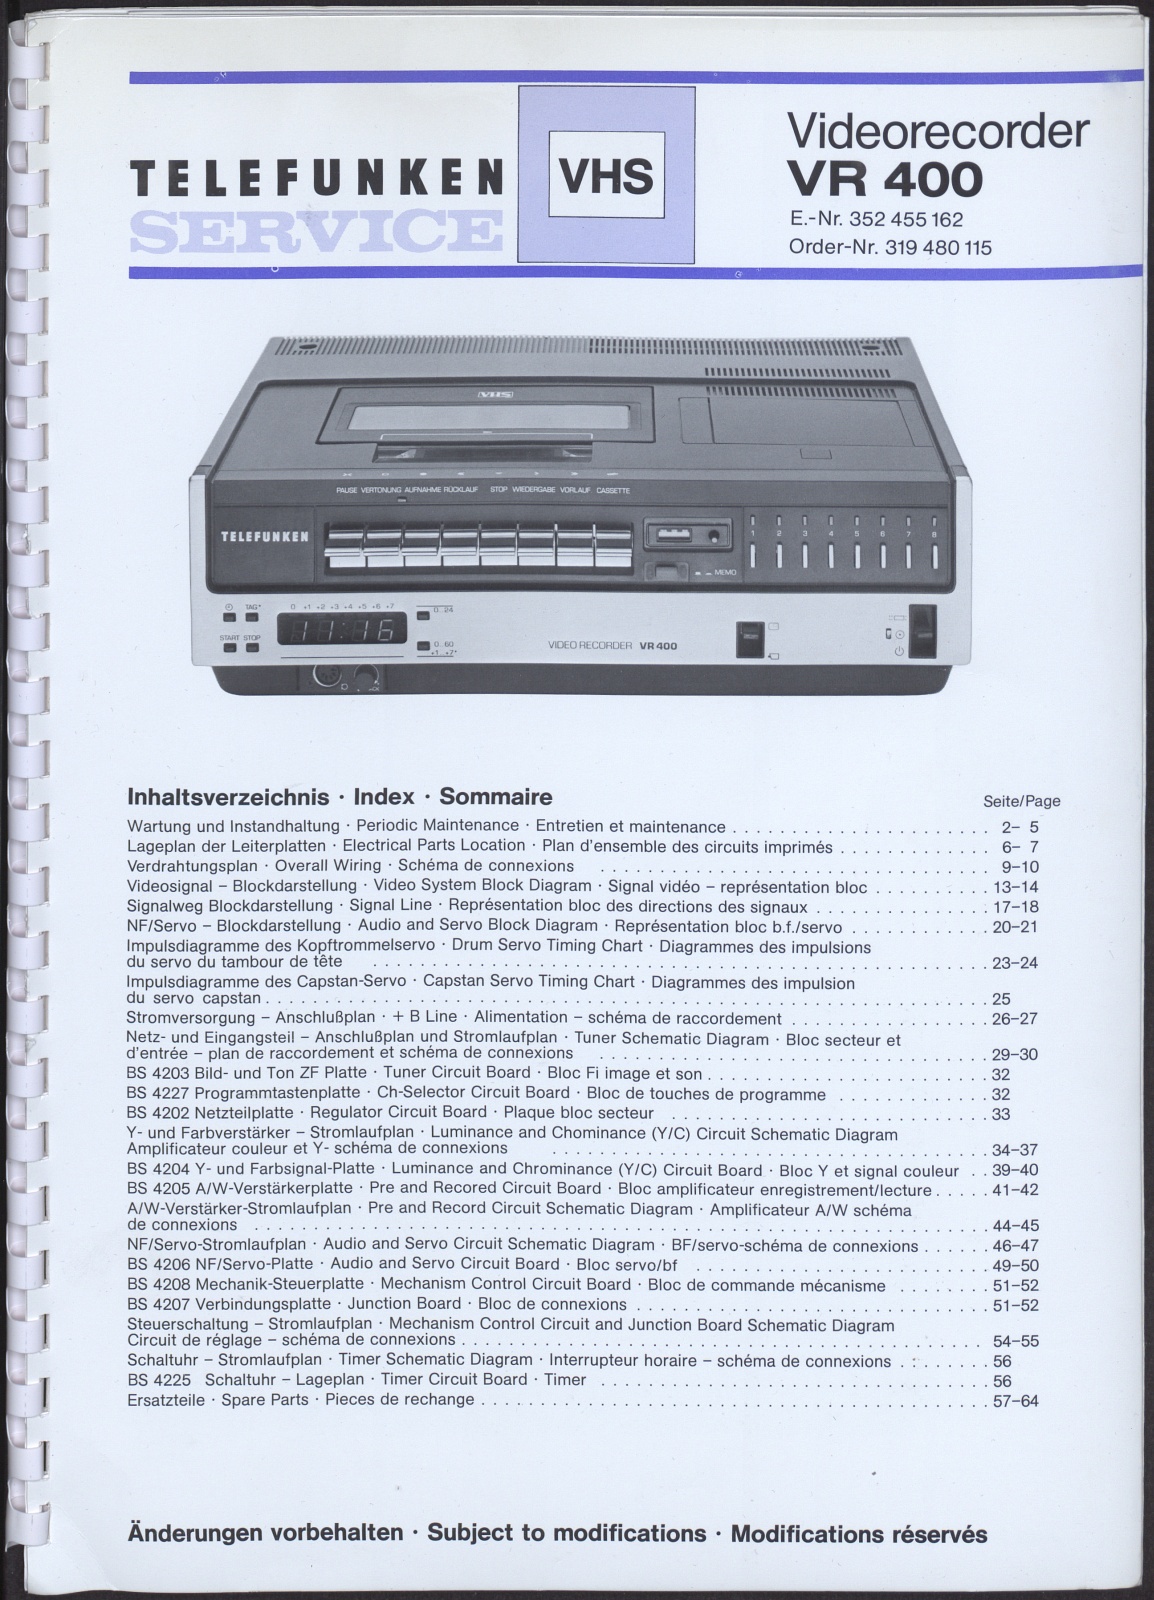 Bedienungsanleitung: Telefunken Service Videorecorder VR 400 (Stiftung Deutsches Technikmuseum Berlin CC0)